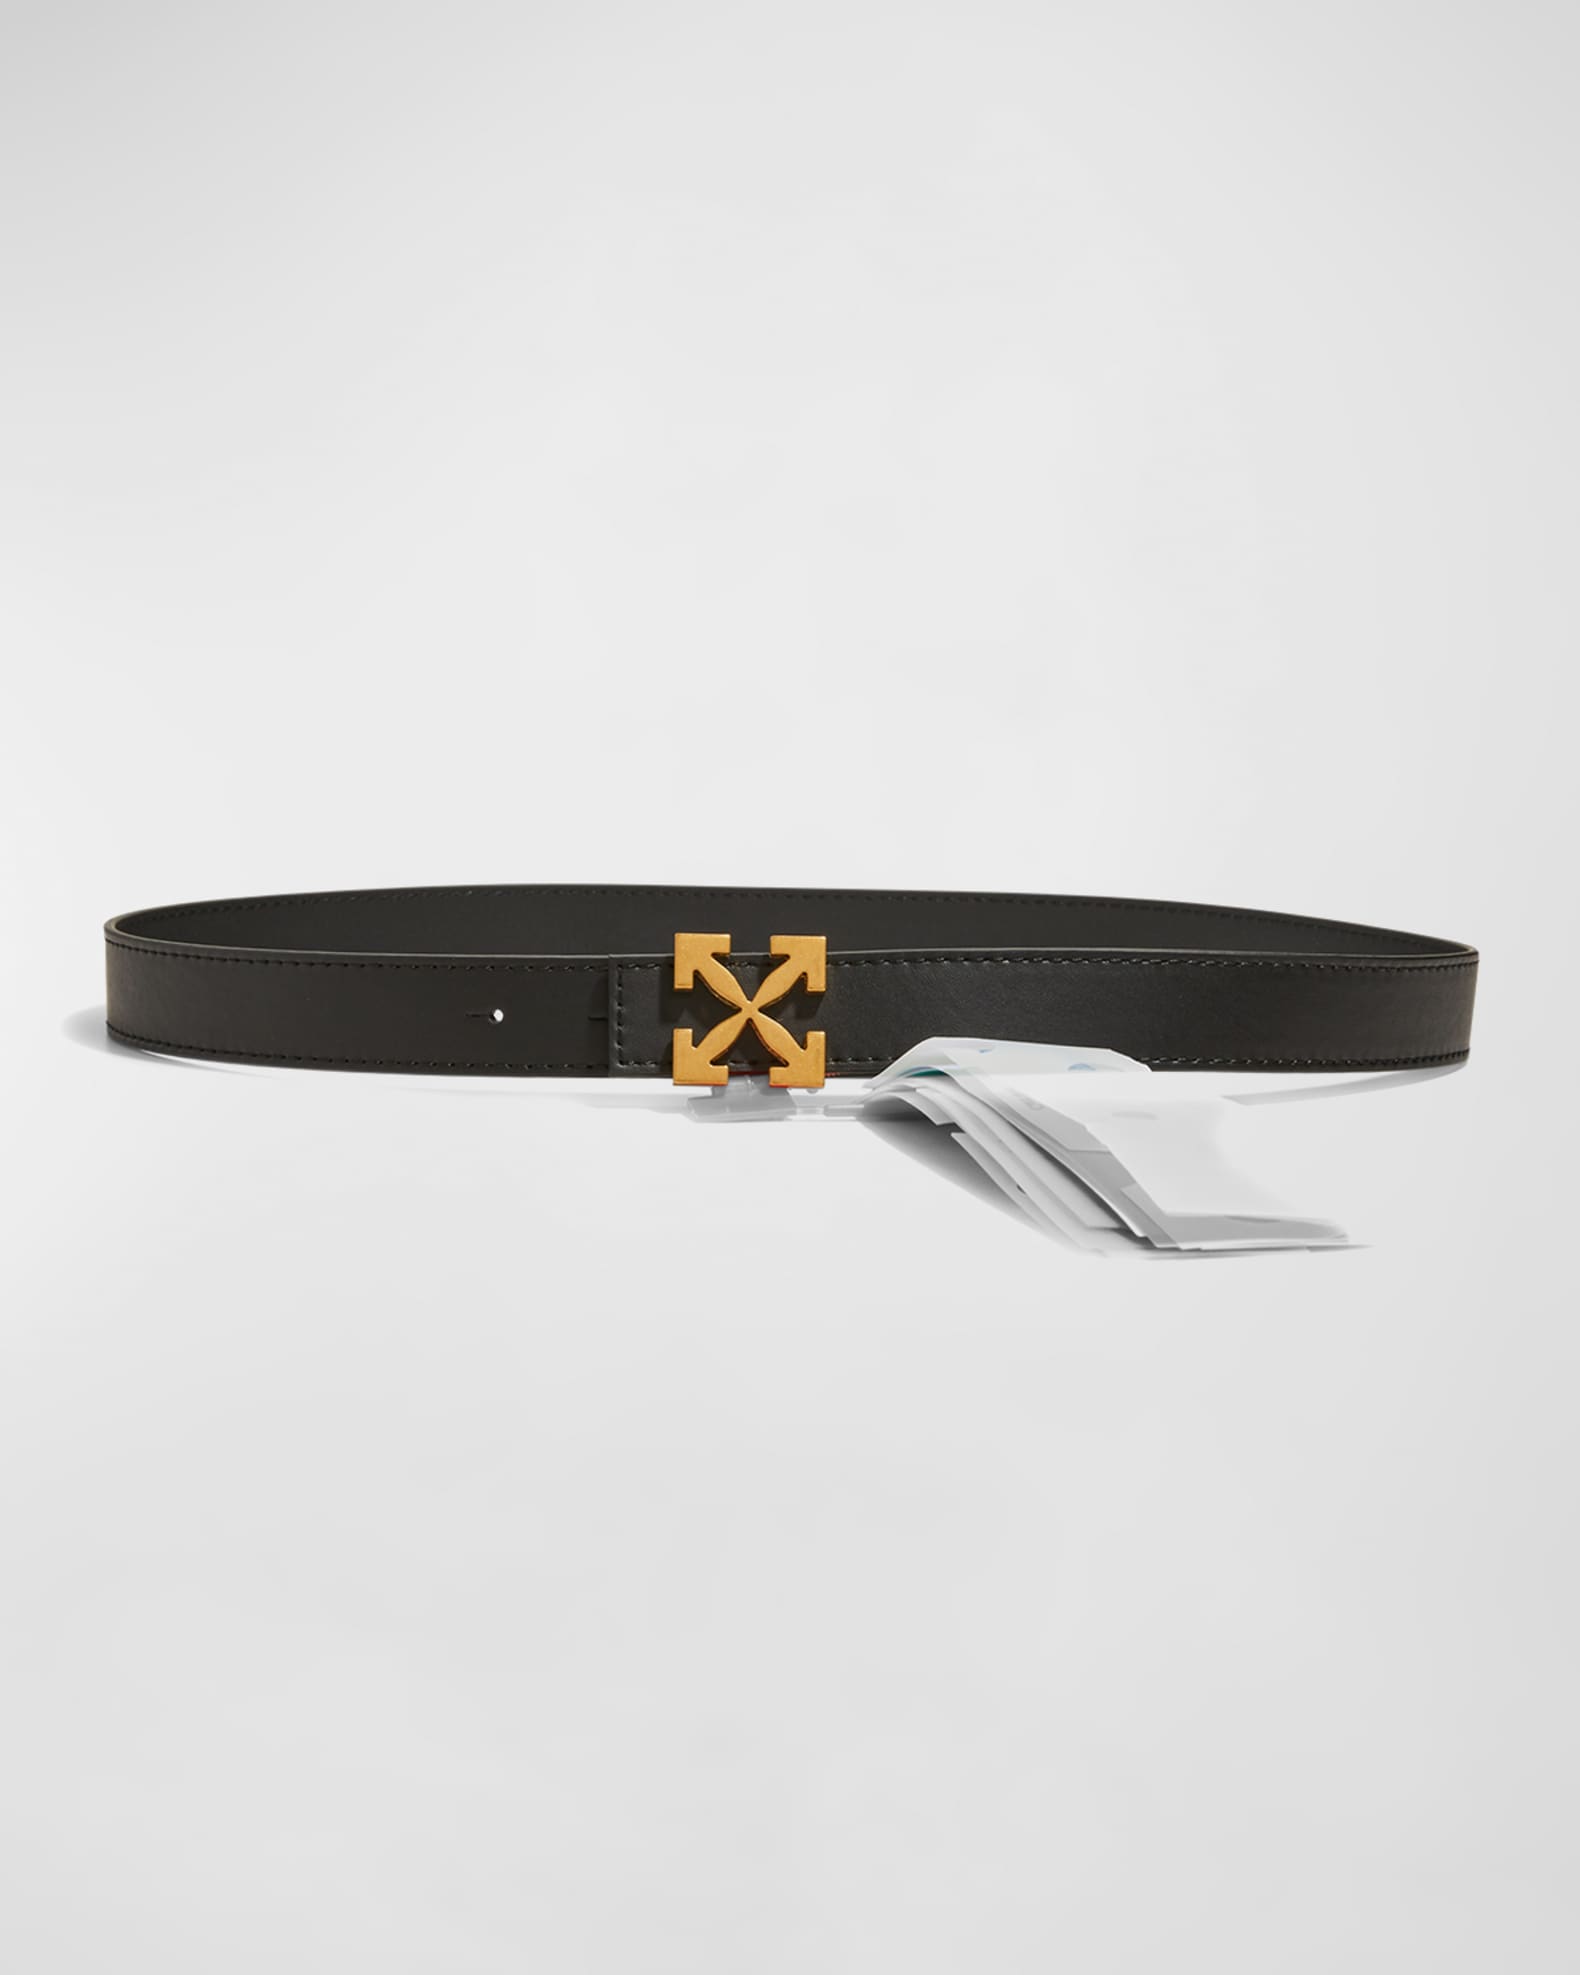 Off-White Arrow Reversible Leather Belt, Black, Women's, 32in / 80cm, Belts Leather Belts